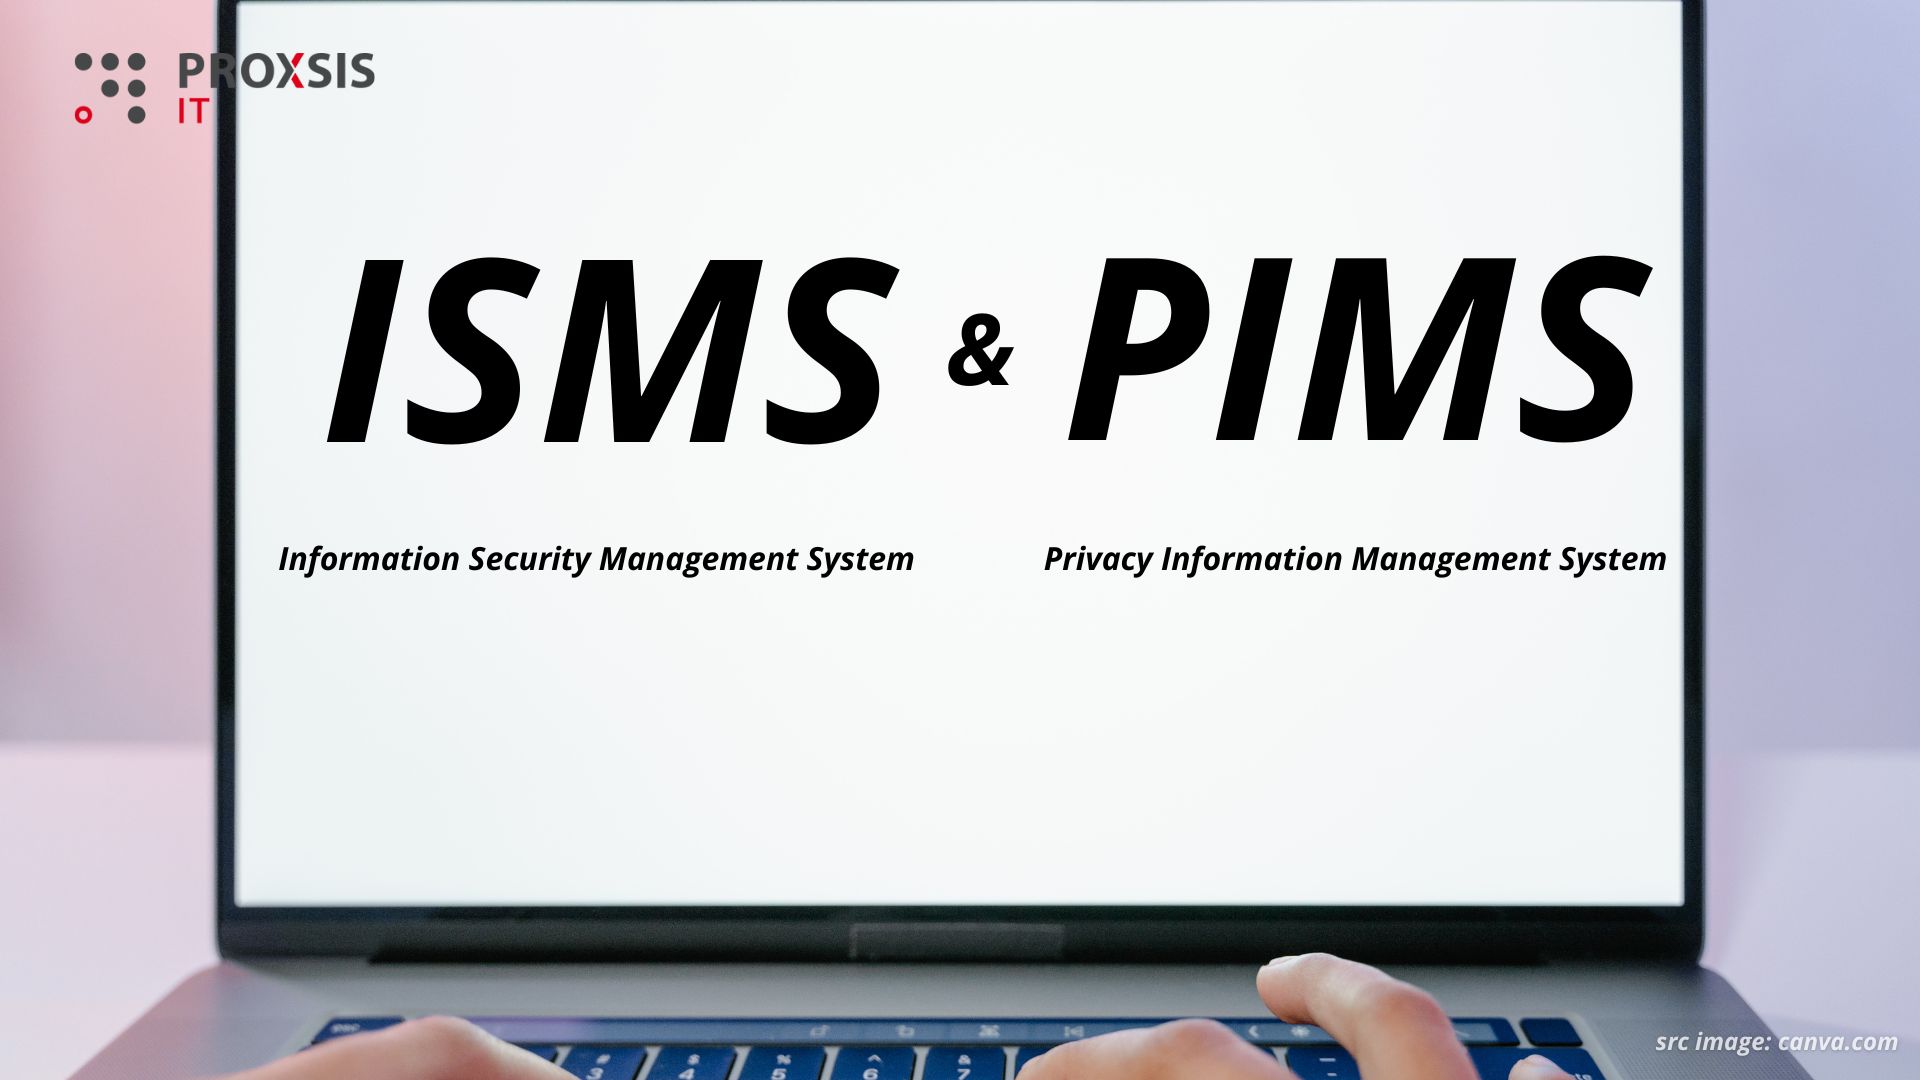 Mengenal ISMS dan PIMS: Framework untuk Mengelola Informasi Sensitif